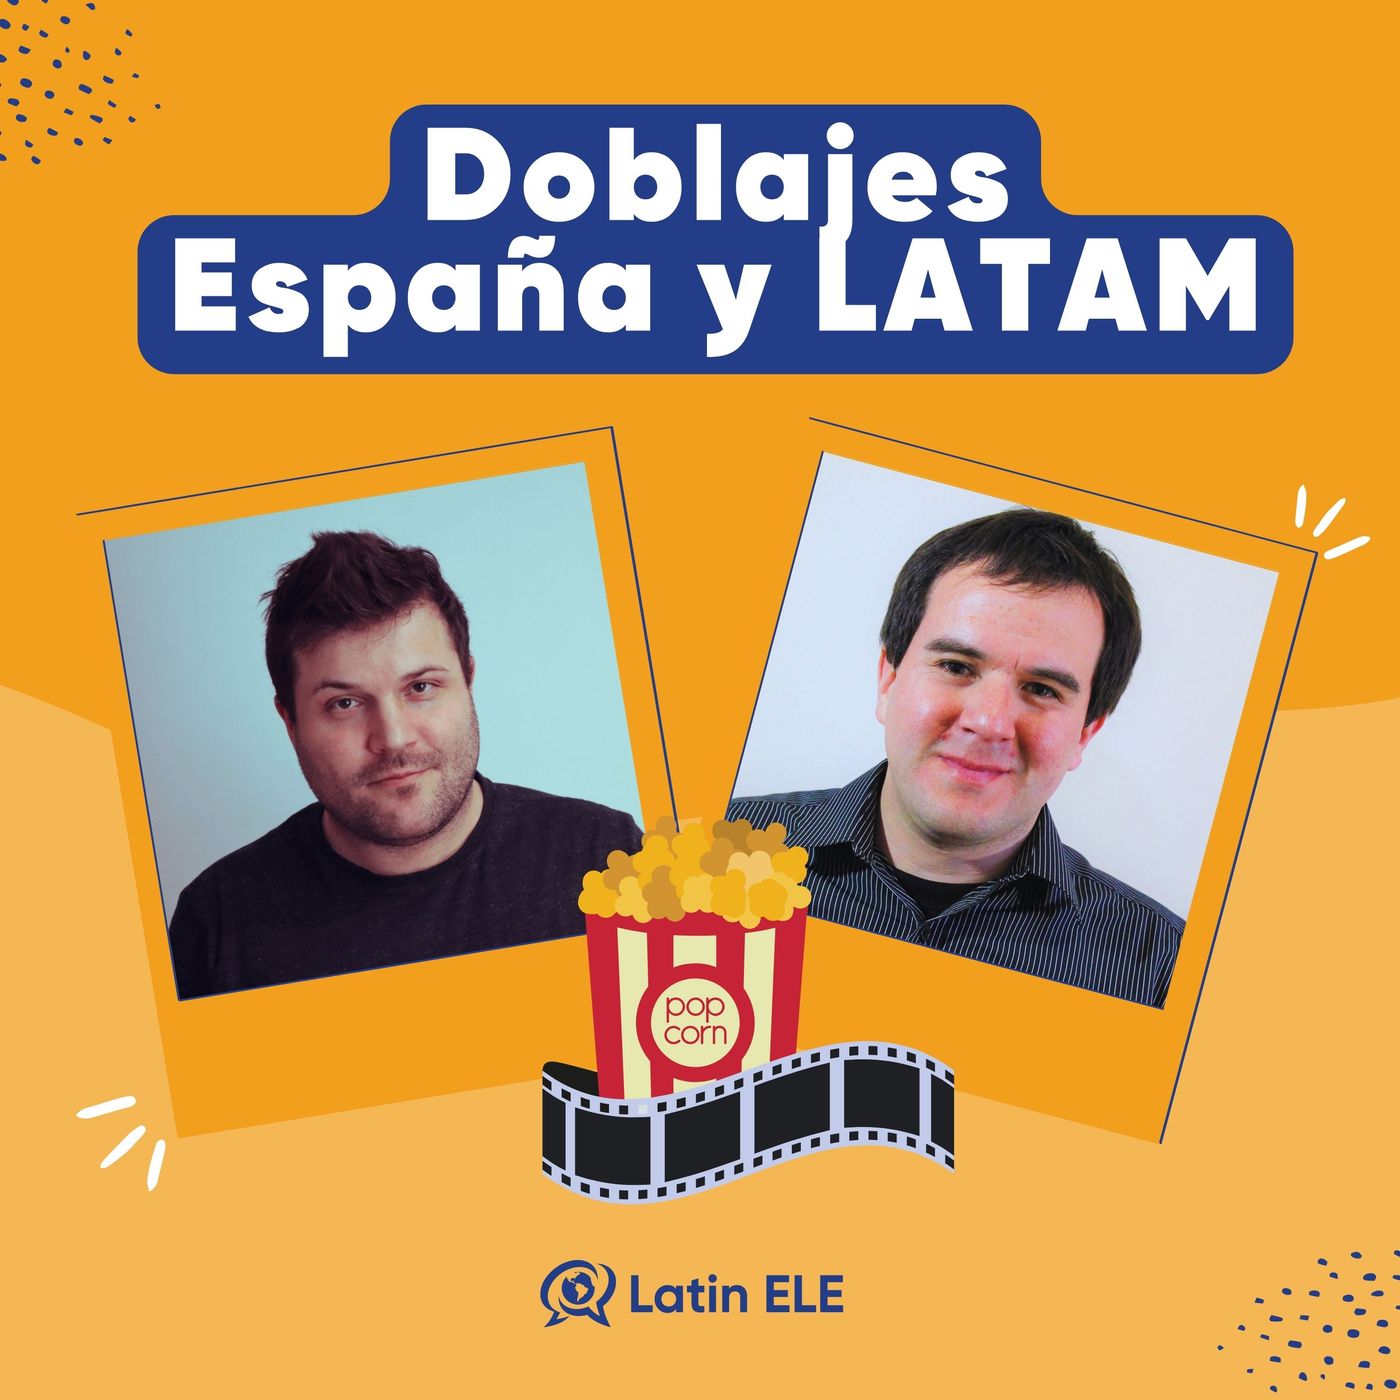 75. España vs. LATAM: Doblajes y Traducciones de Películas (con Diego de Fluent Spanish Express)